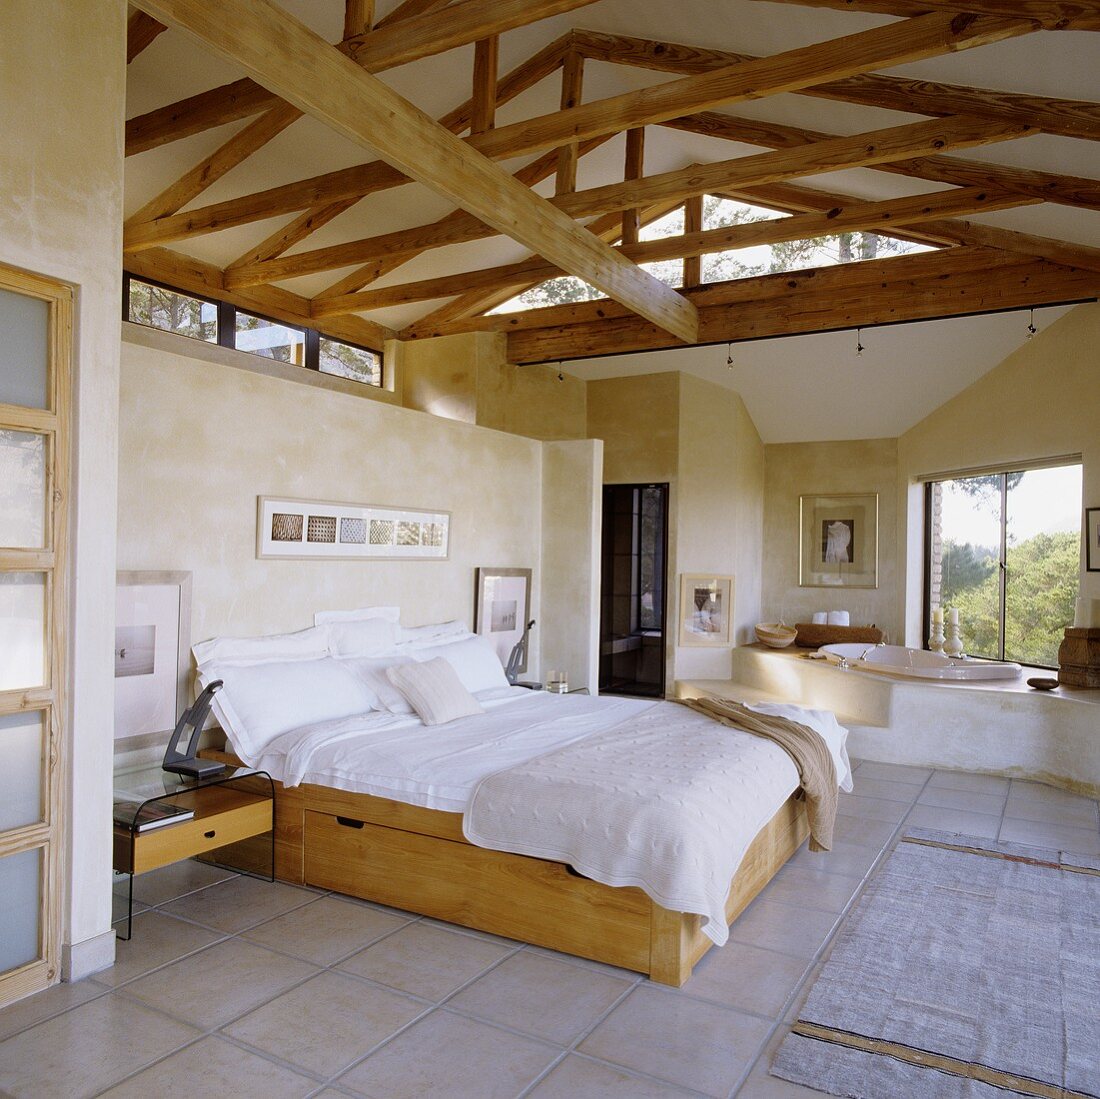 Offener Schlaf- und Badbereich im ausgebauten Dachraum mit Holzkonstruktion